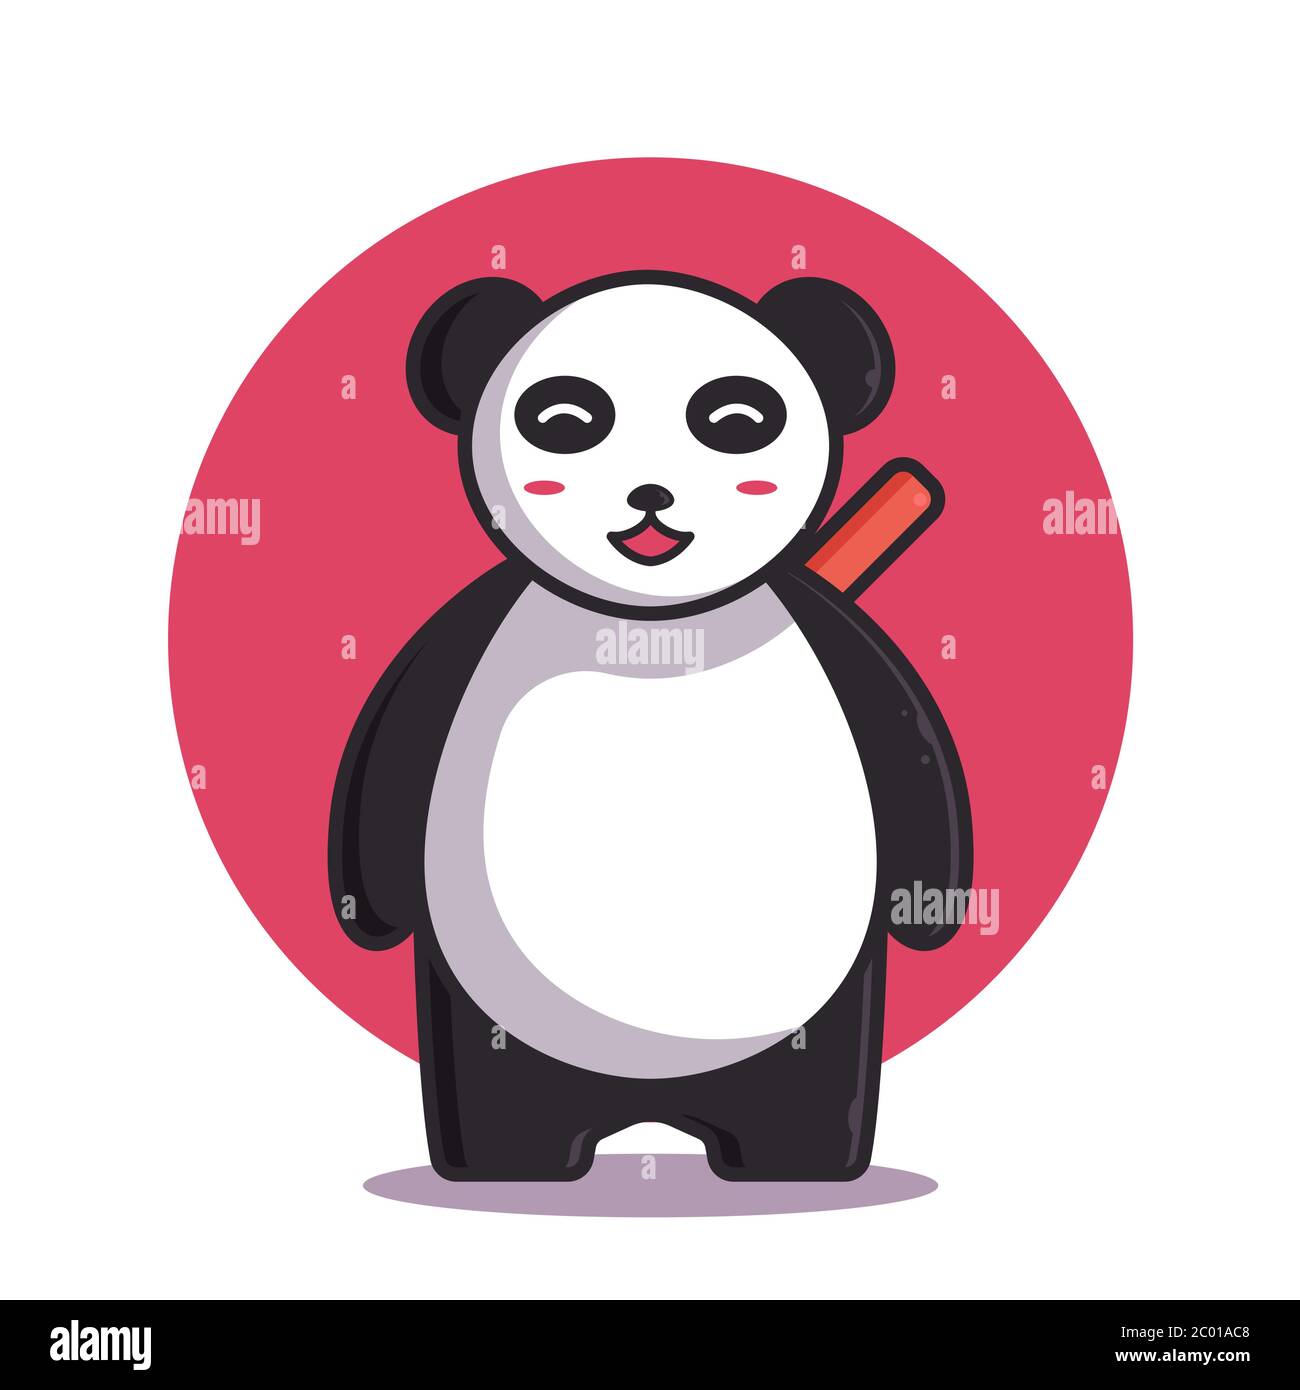 Cute Panda Vector Illustration. Ninja Panda Logo. Flat Cartoon ...